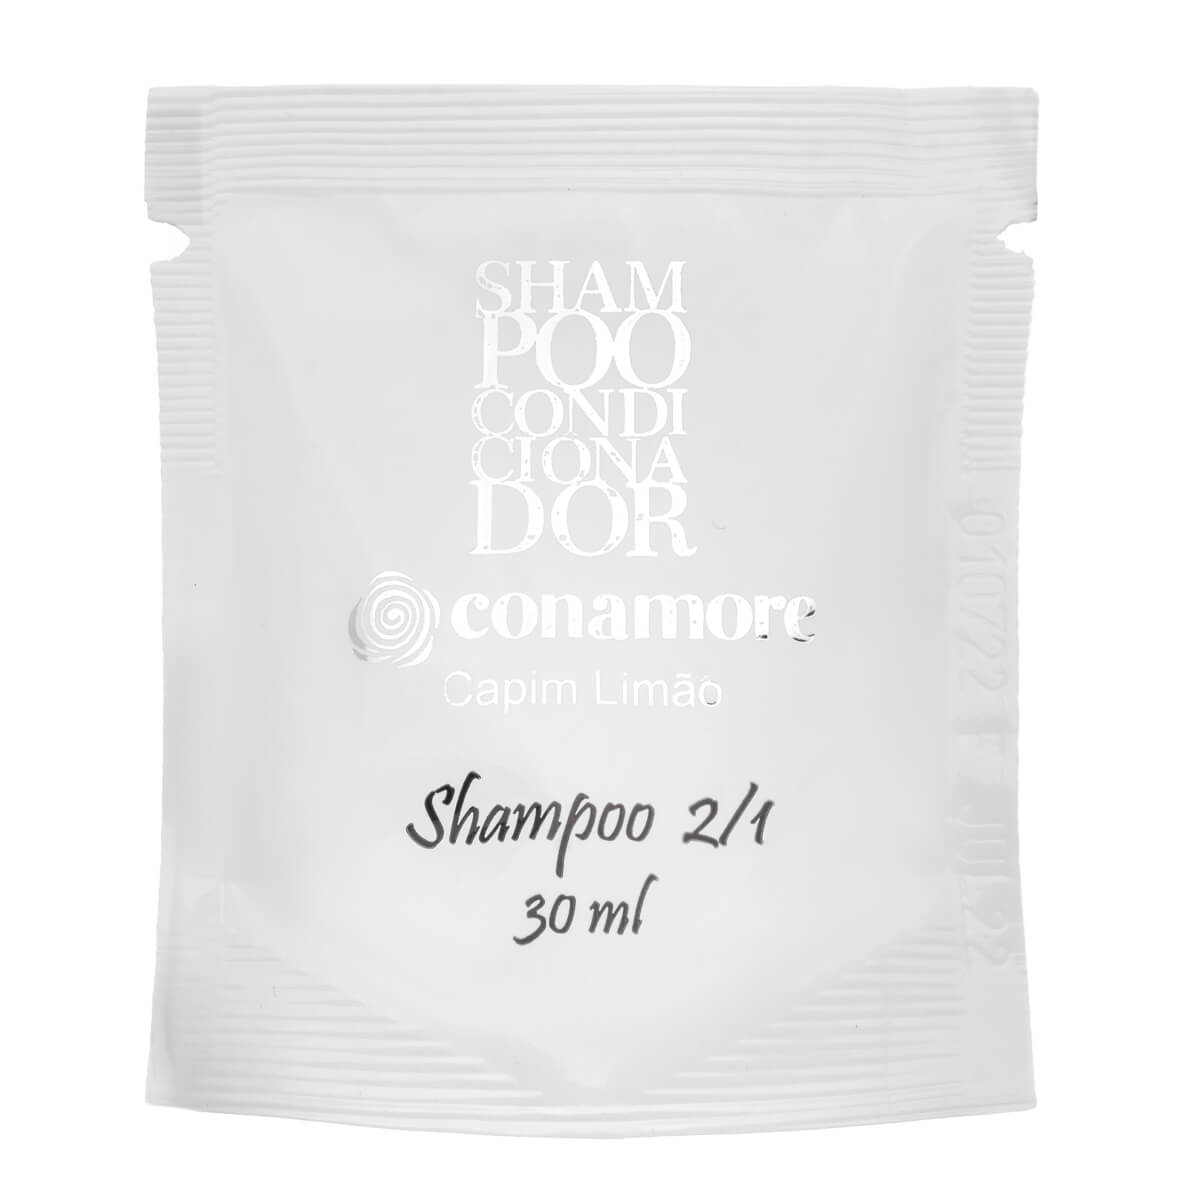 Saches Shampoo e Condicionador 2x1 Capim Limao